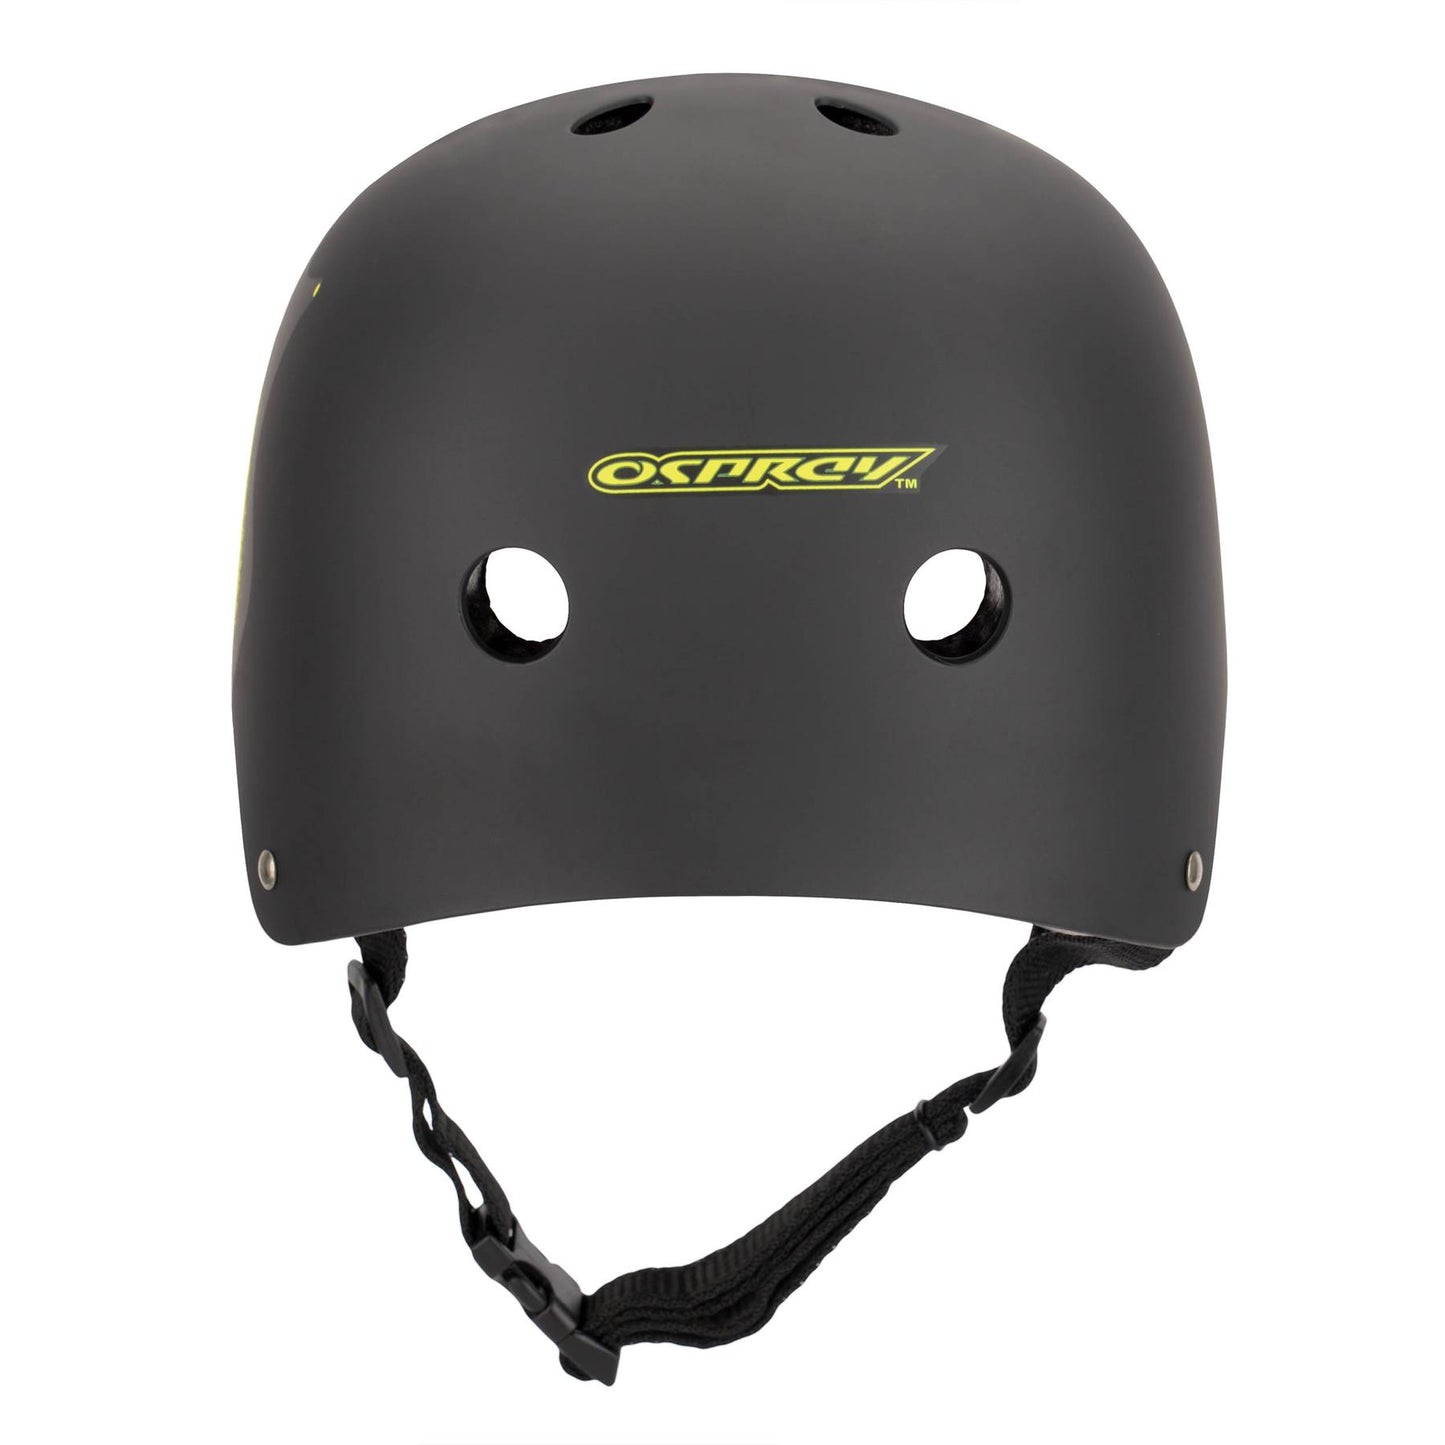 Osprey Skate Helmet XSmall